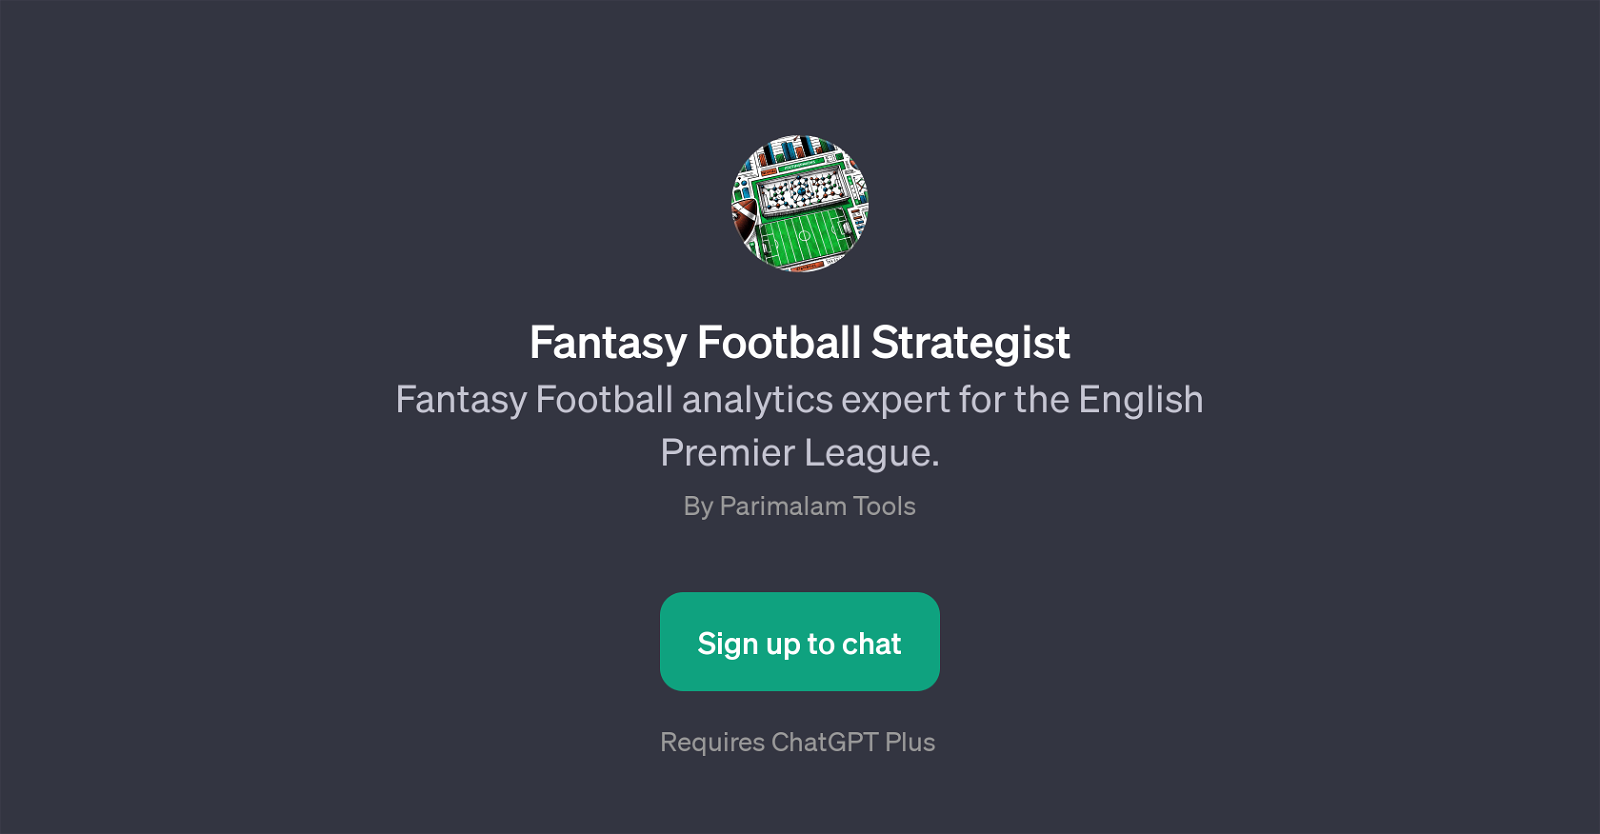 Fantasy Football Strategist website